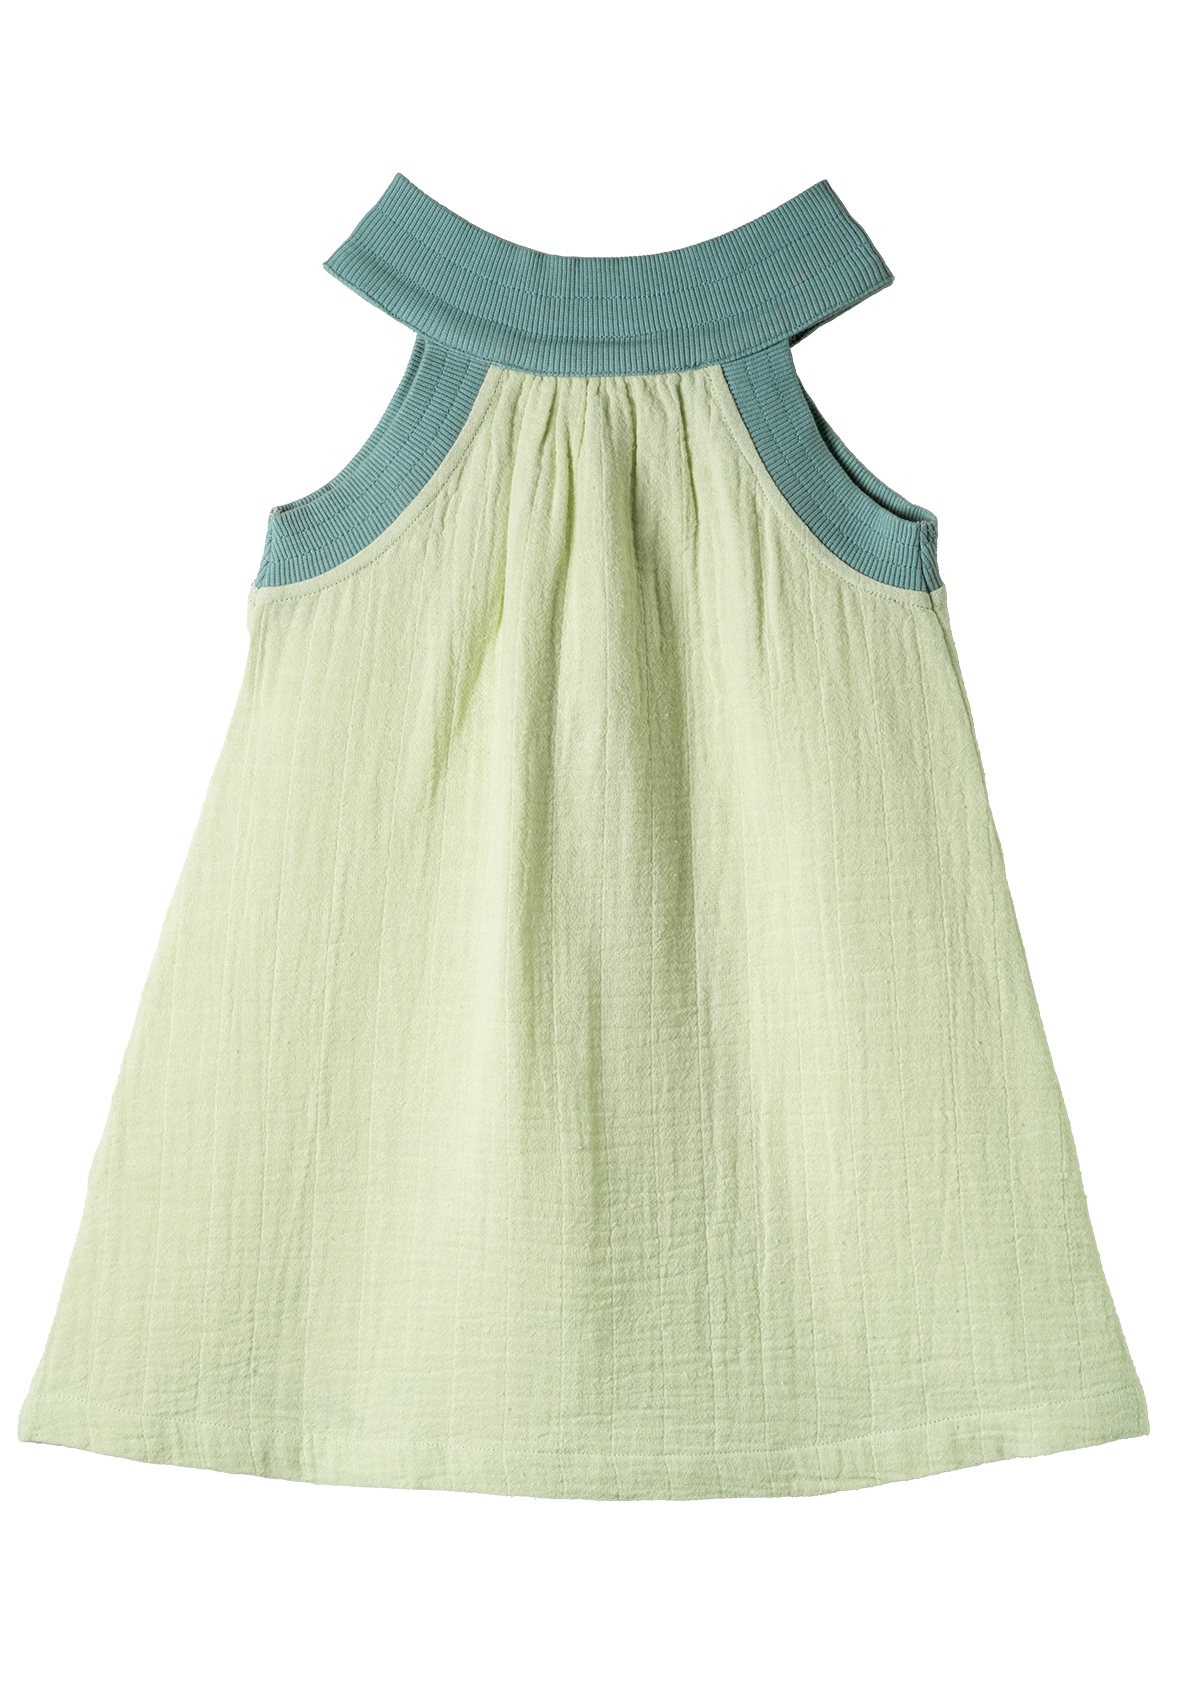 Ava Summer Dress Greens Organic Cotton GOTS